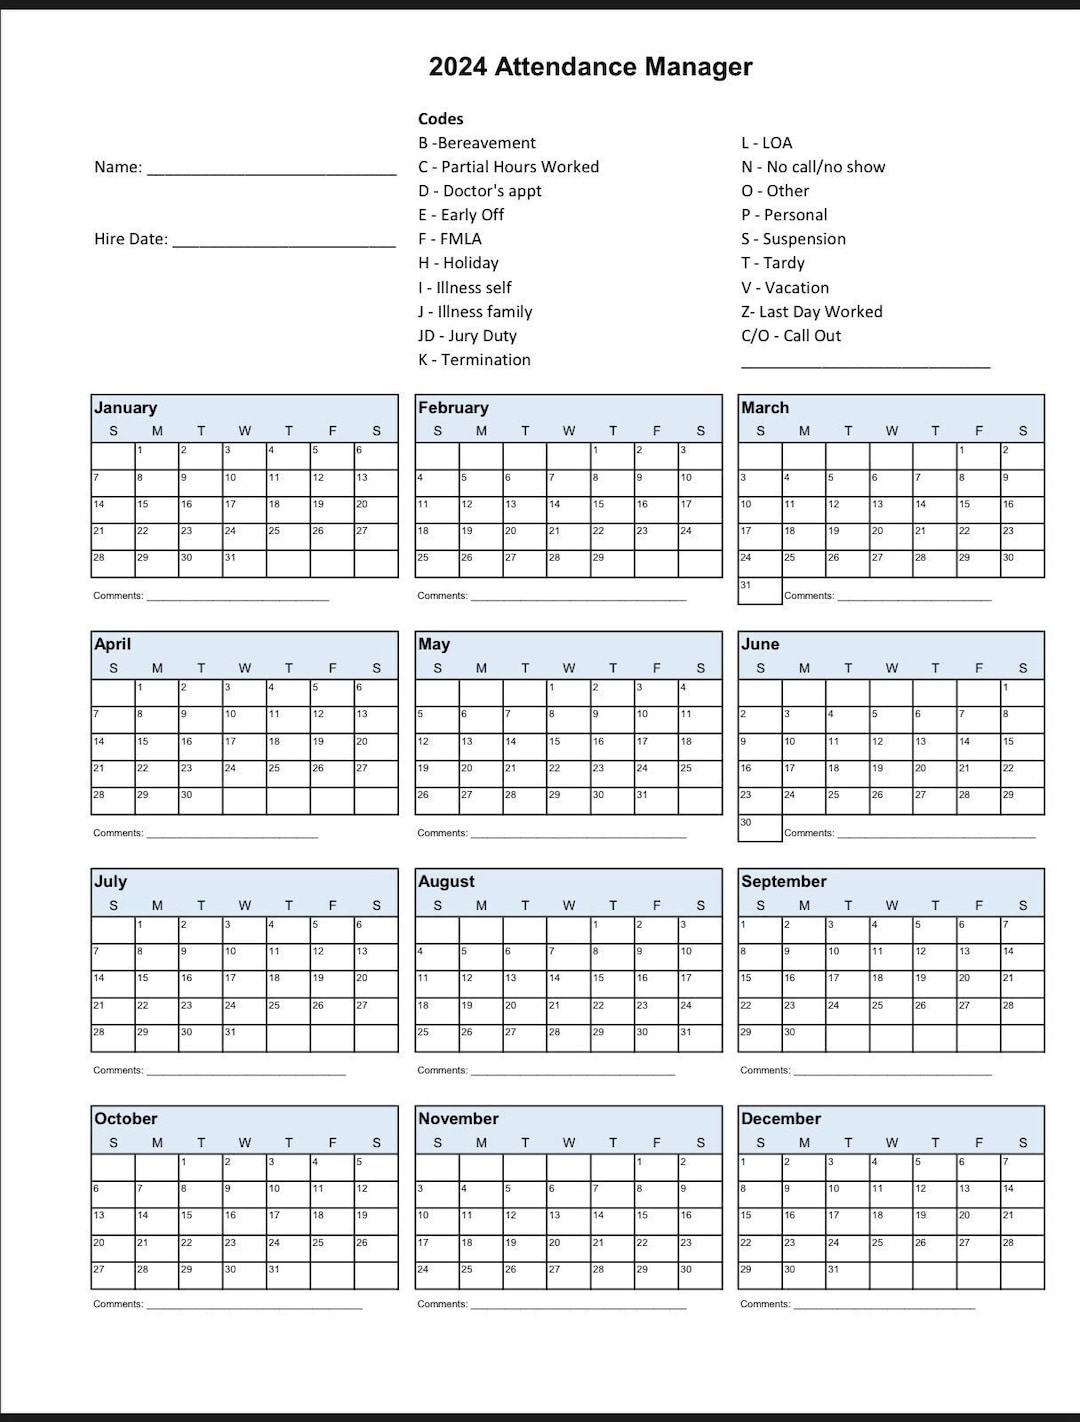 2024 Employee School Attendance Tracker Calendar, Employee for Attendance Tracking Calendar 2024